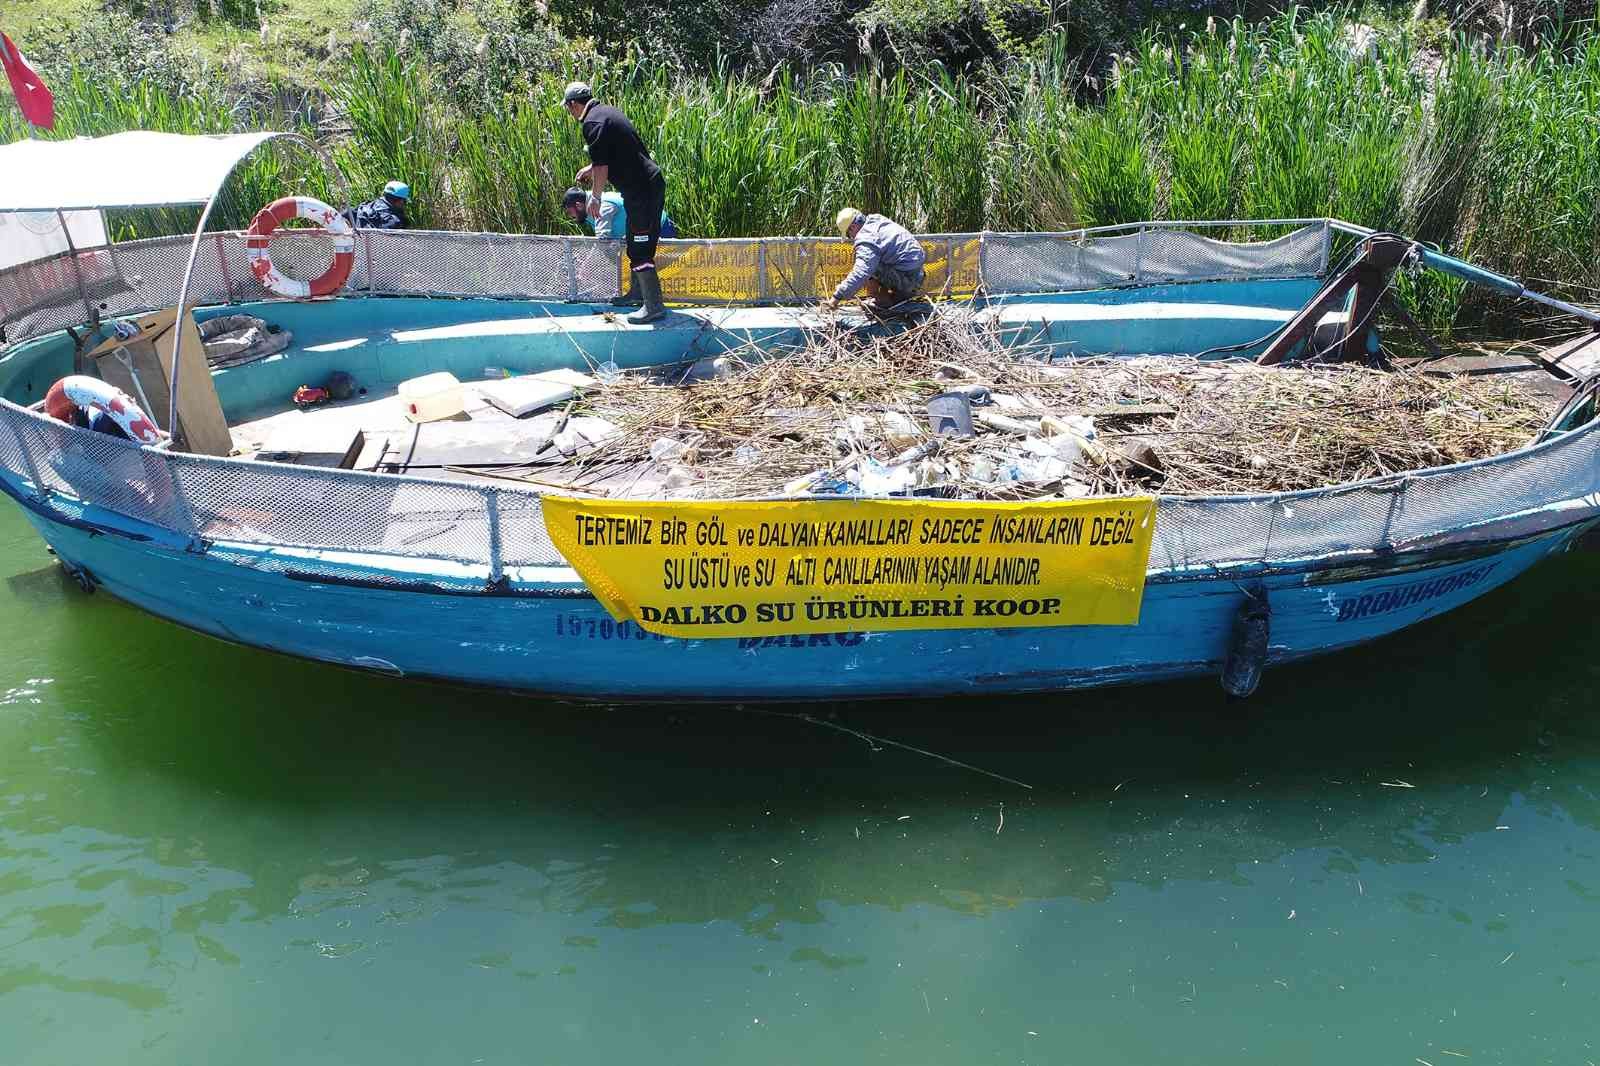 Atıklar, Köyceğiz Gölü ile Dalyan kanallarında tehlike oluşturuyor